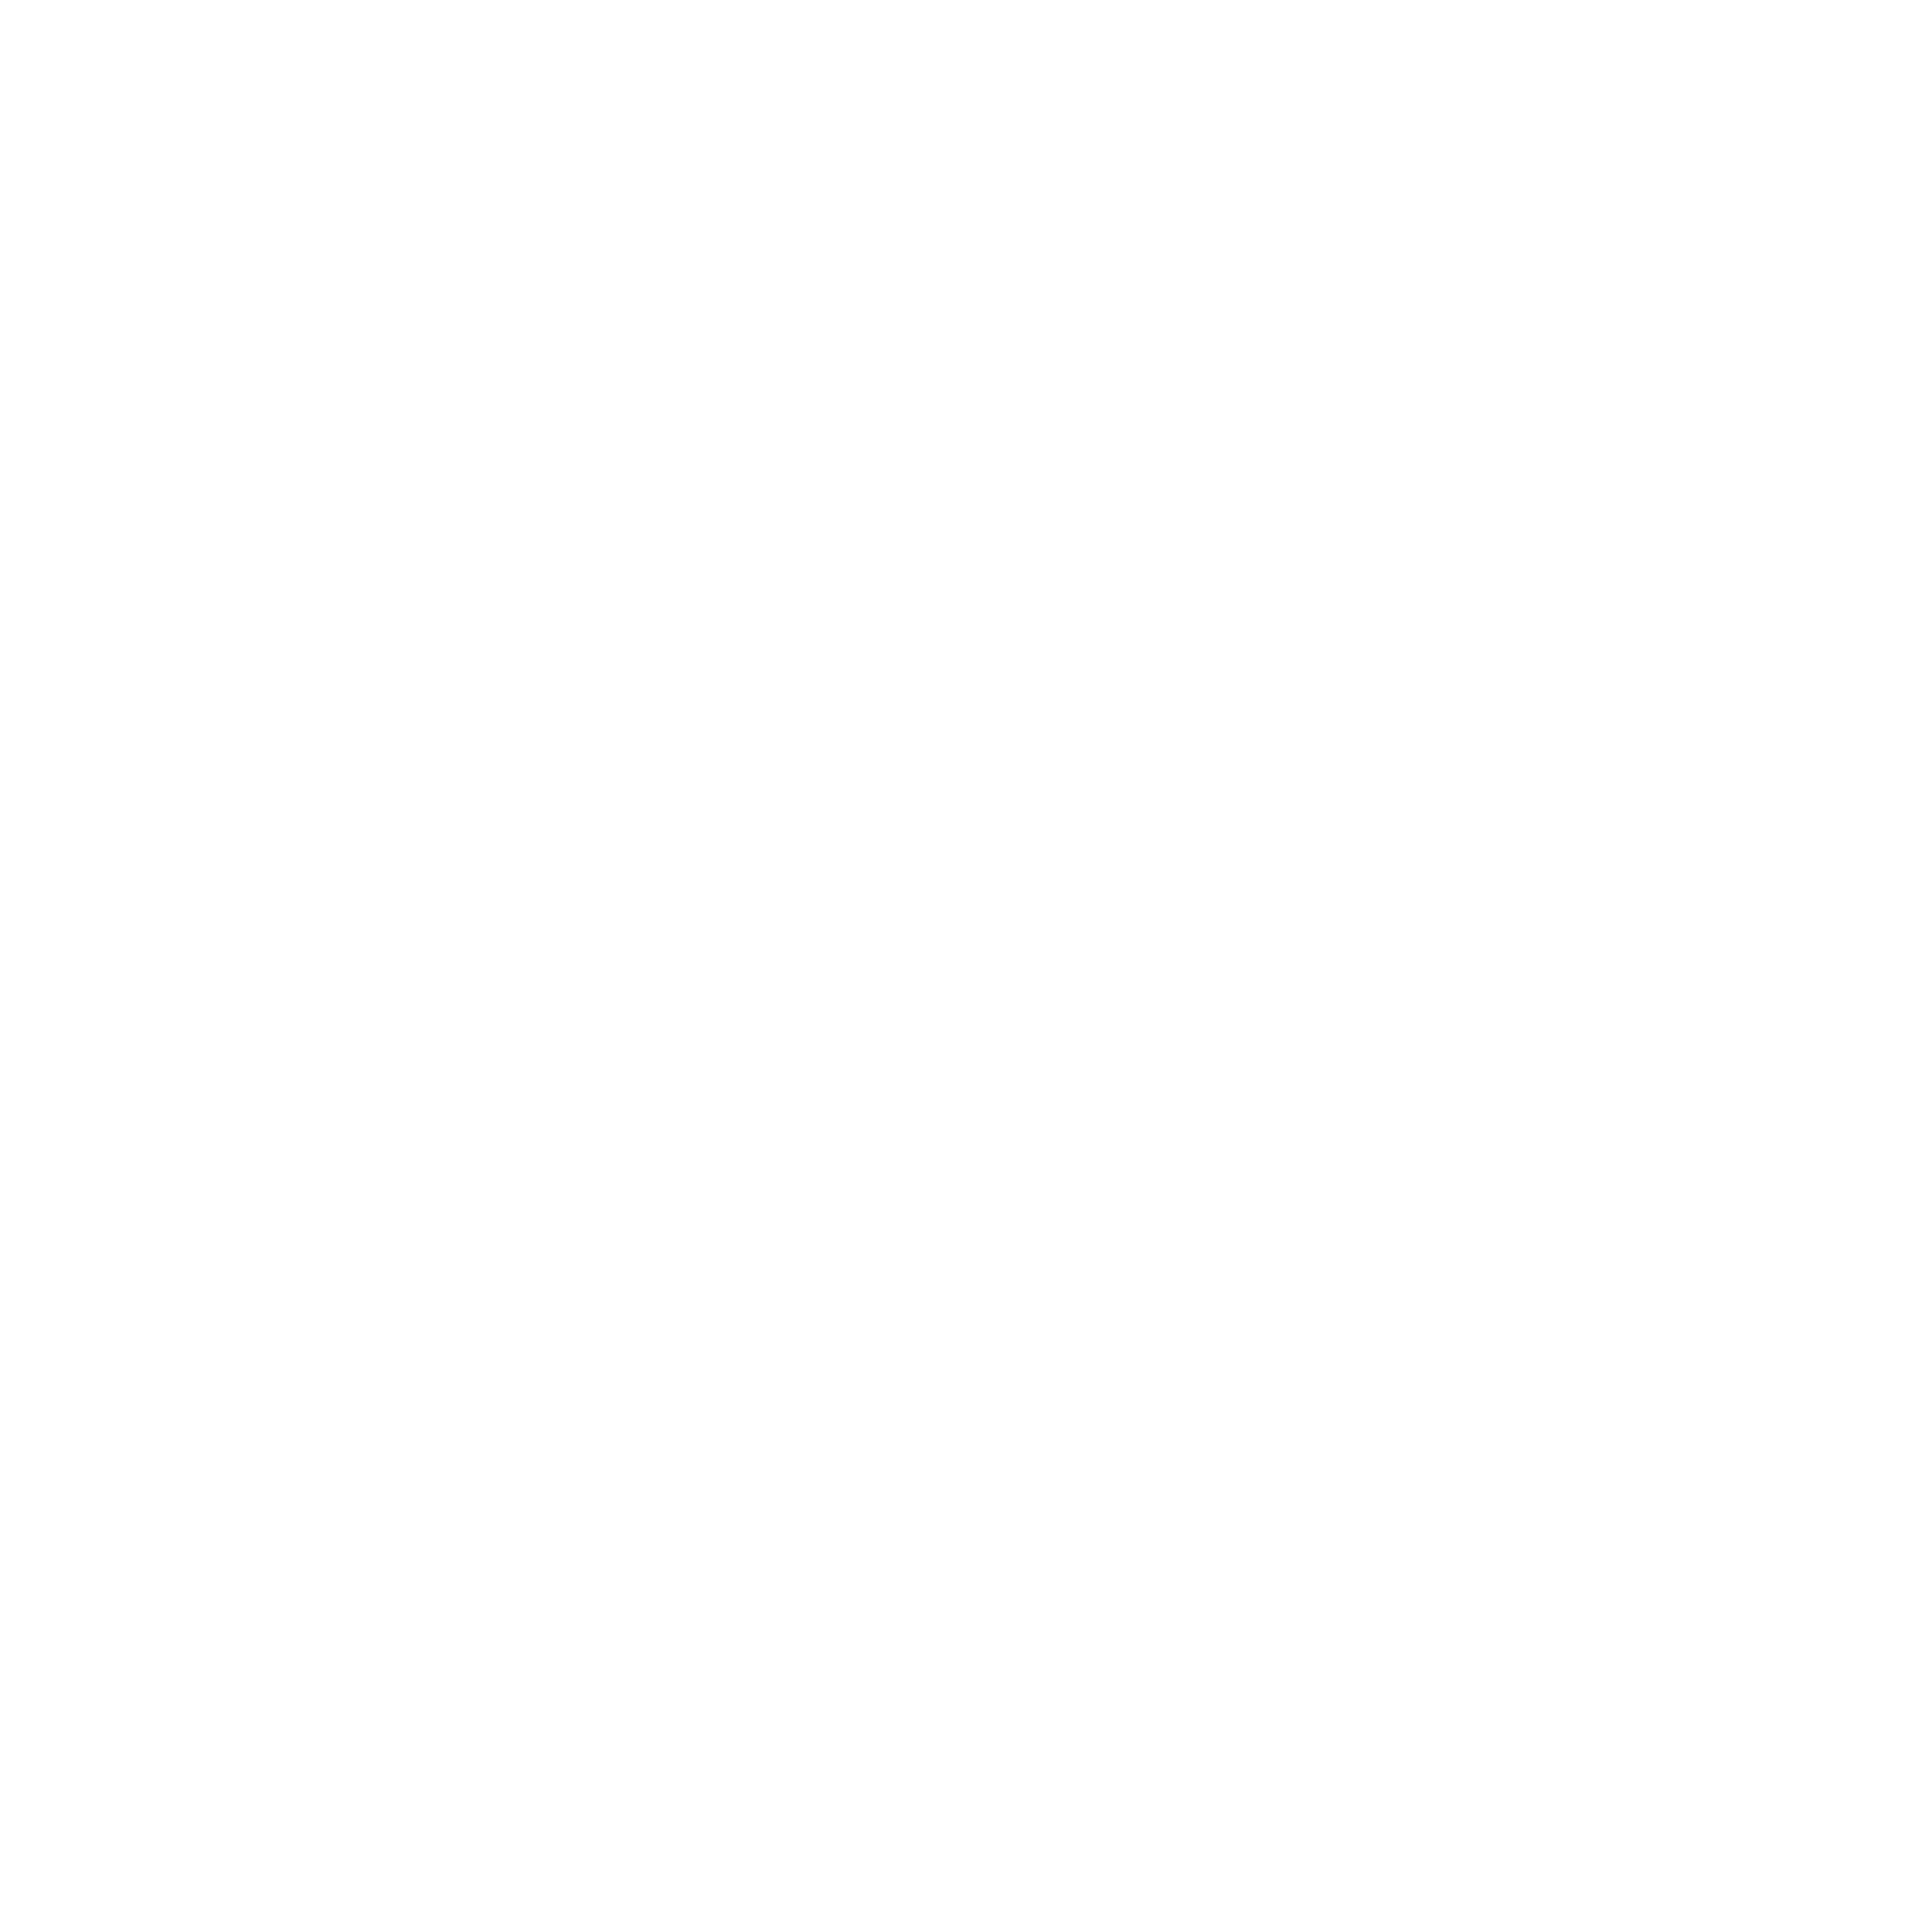 arc-teryx-logo-png-transparent.png